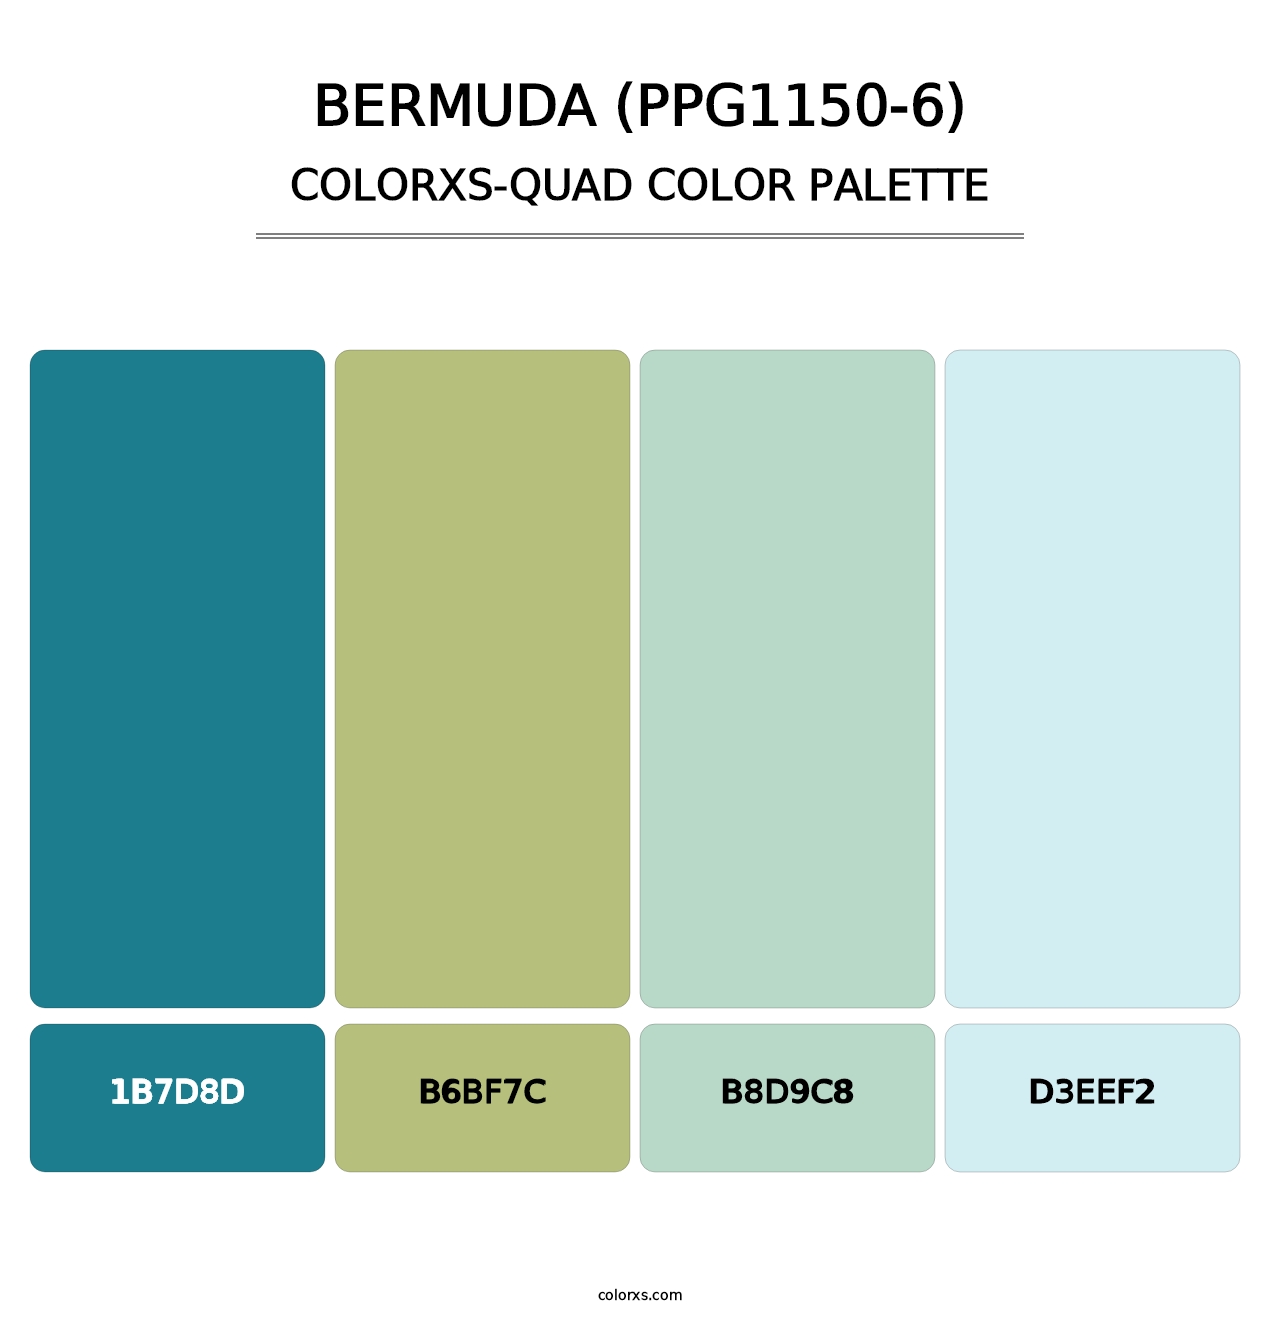 Bermuda (PPG1150-6) - Colorxs Quad Palette